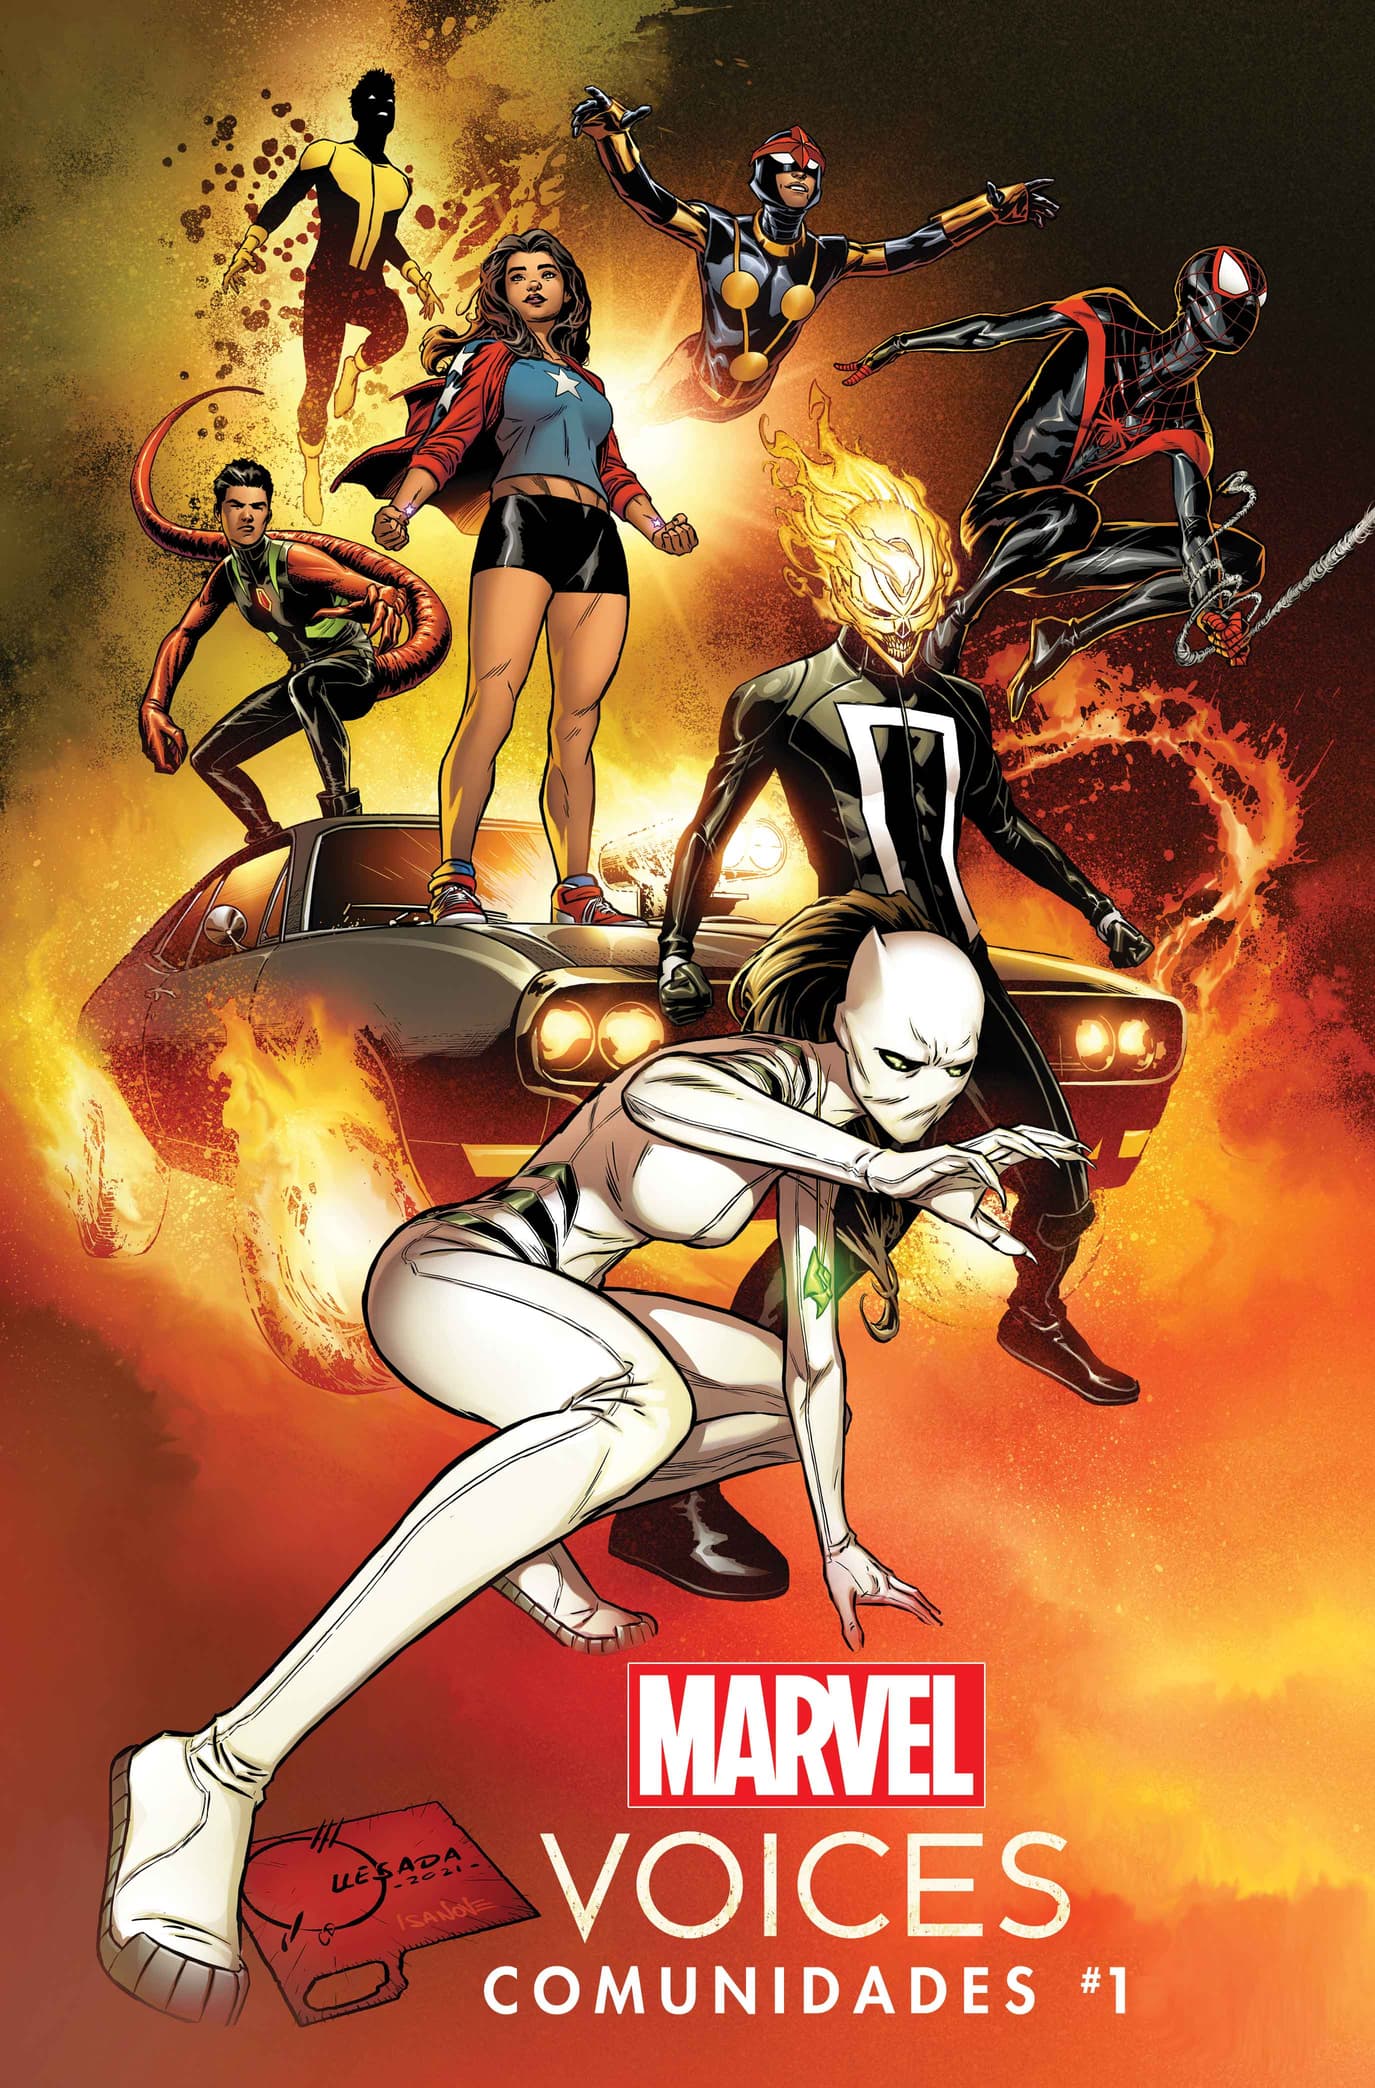 Marvel's Voices: Comunidades #1 Cover by Joe Quesada